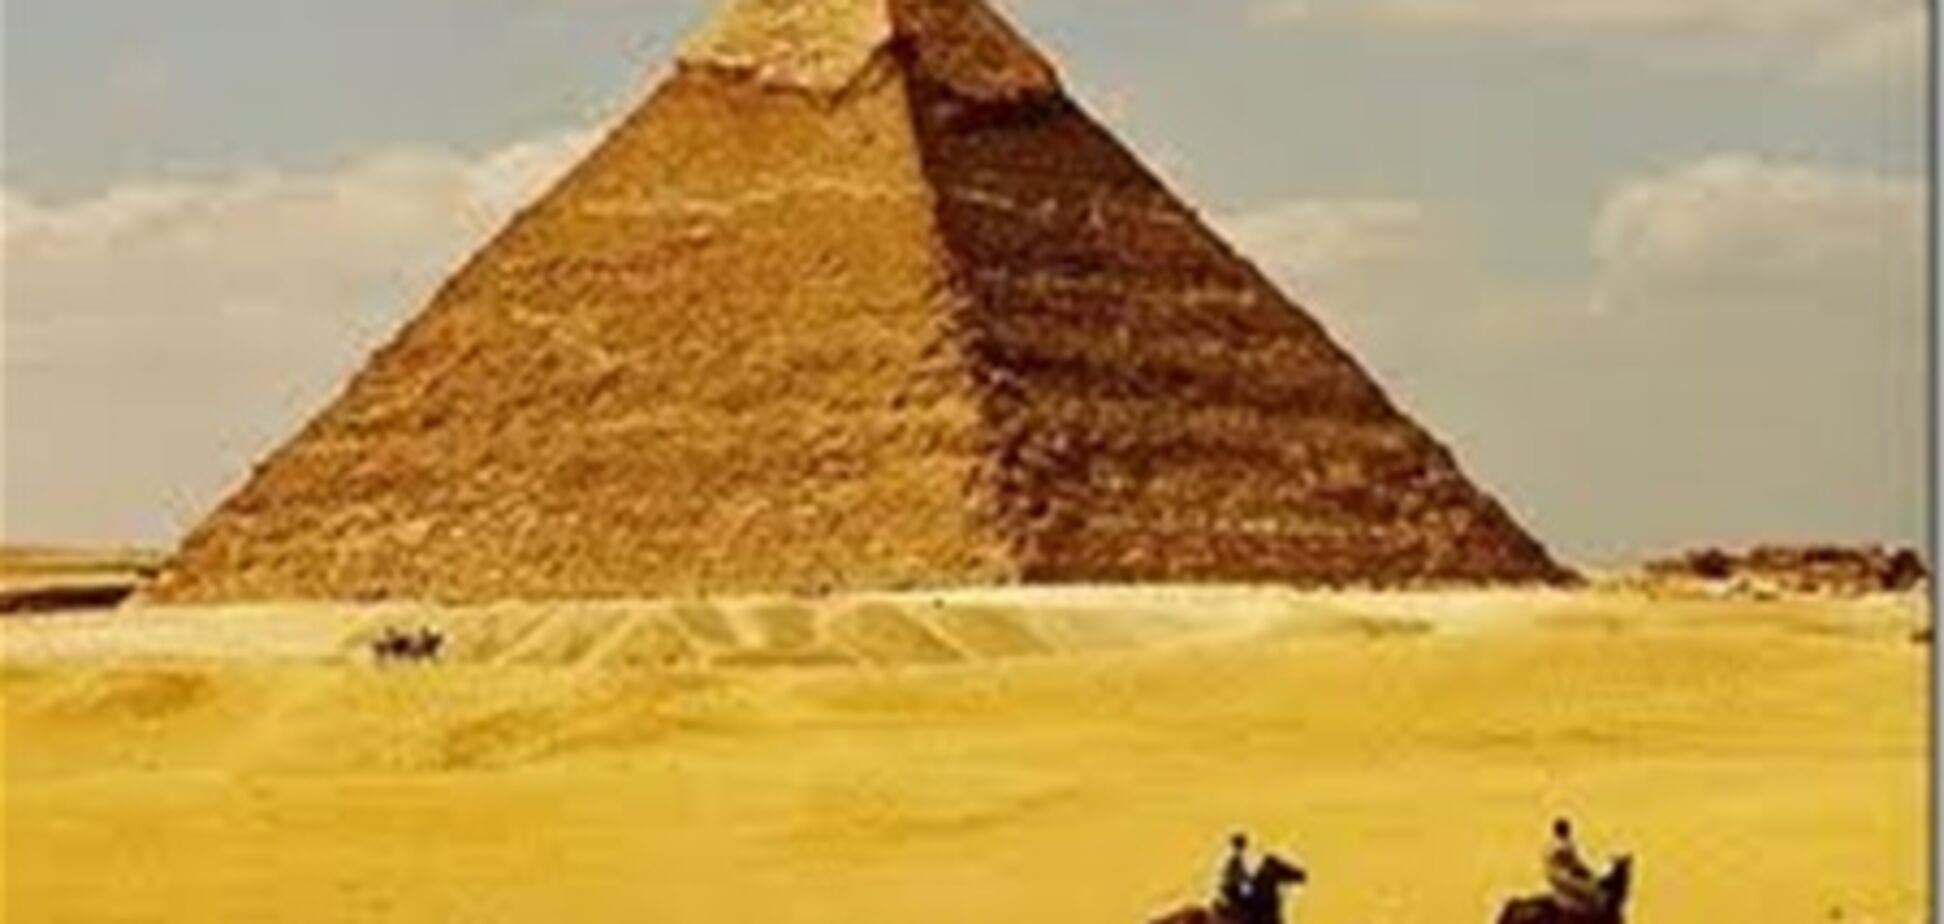 В 2012 году ученые откроют тайные врата пирамиды Хеопса